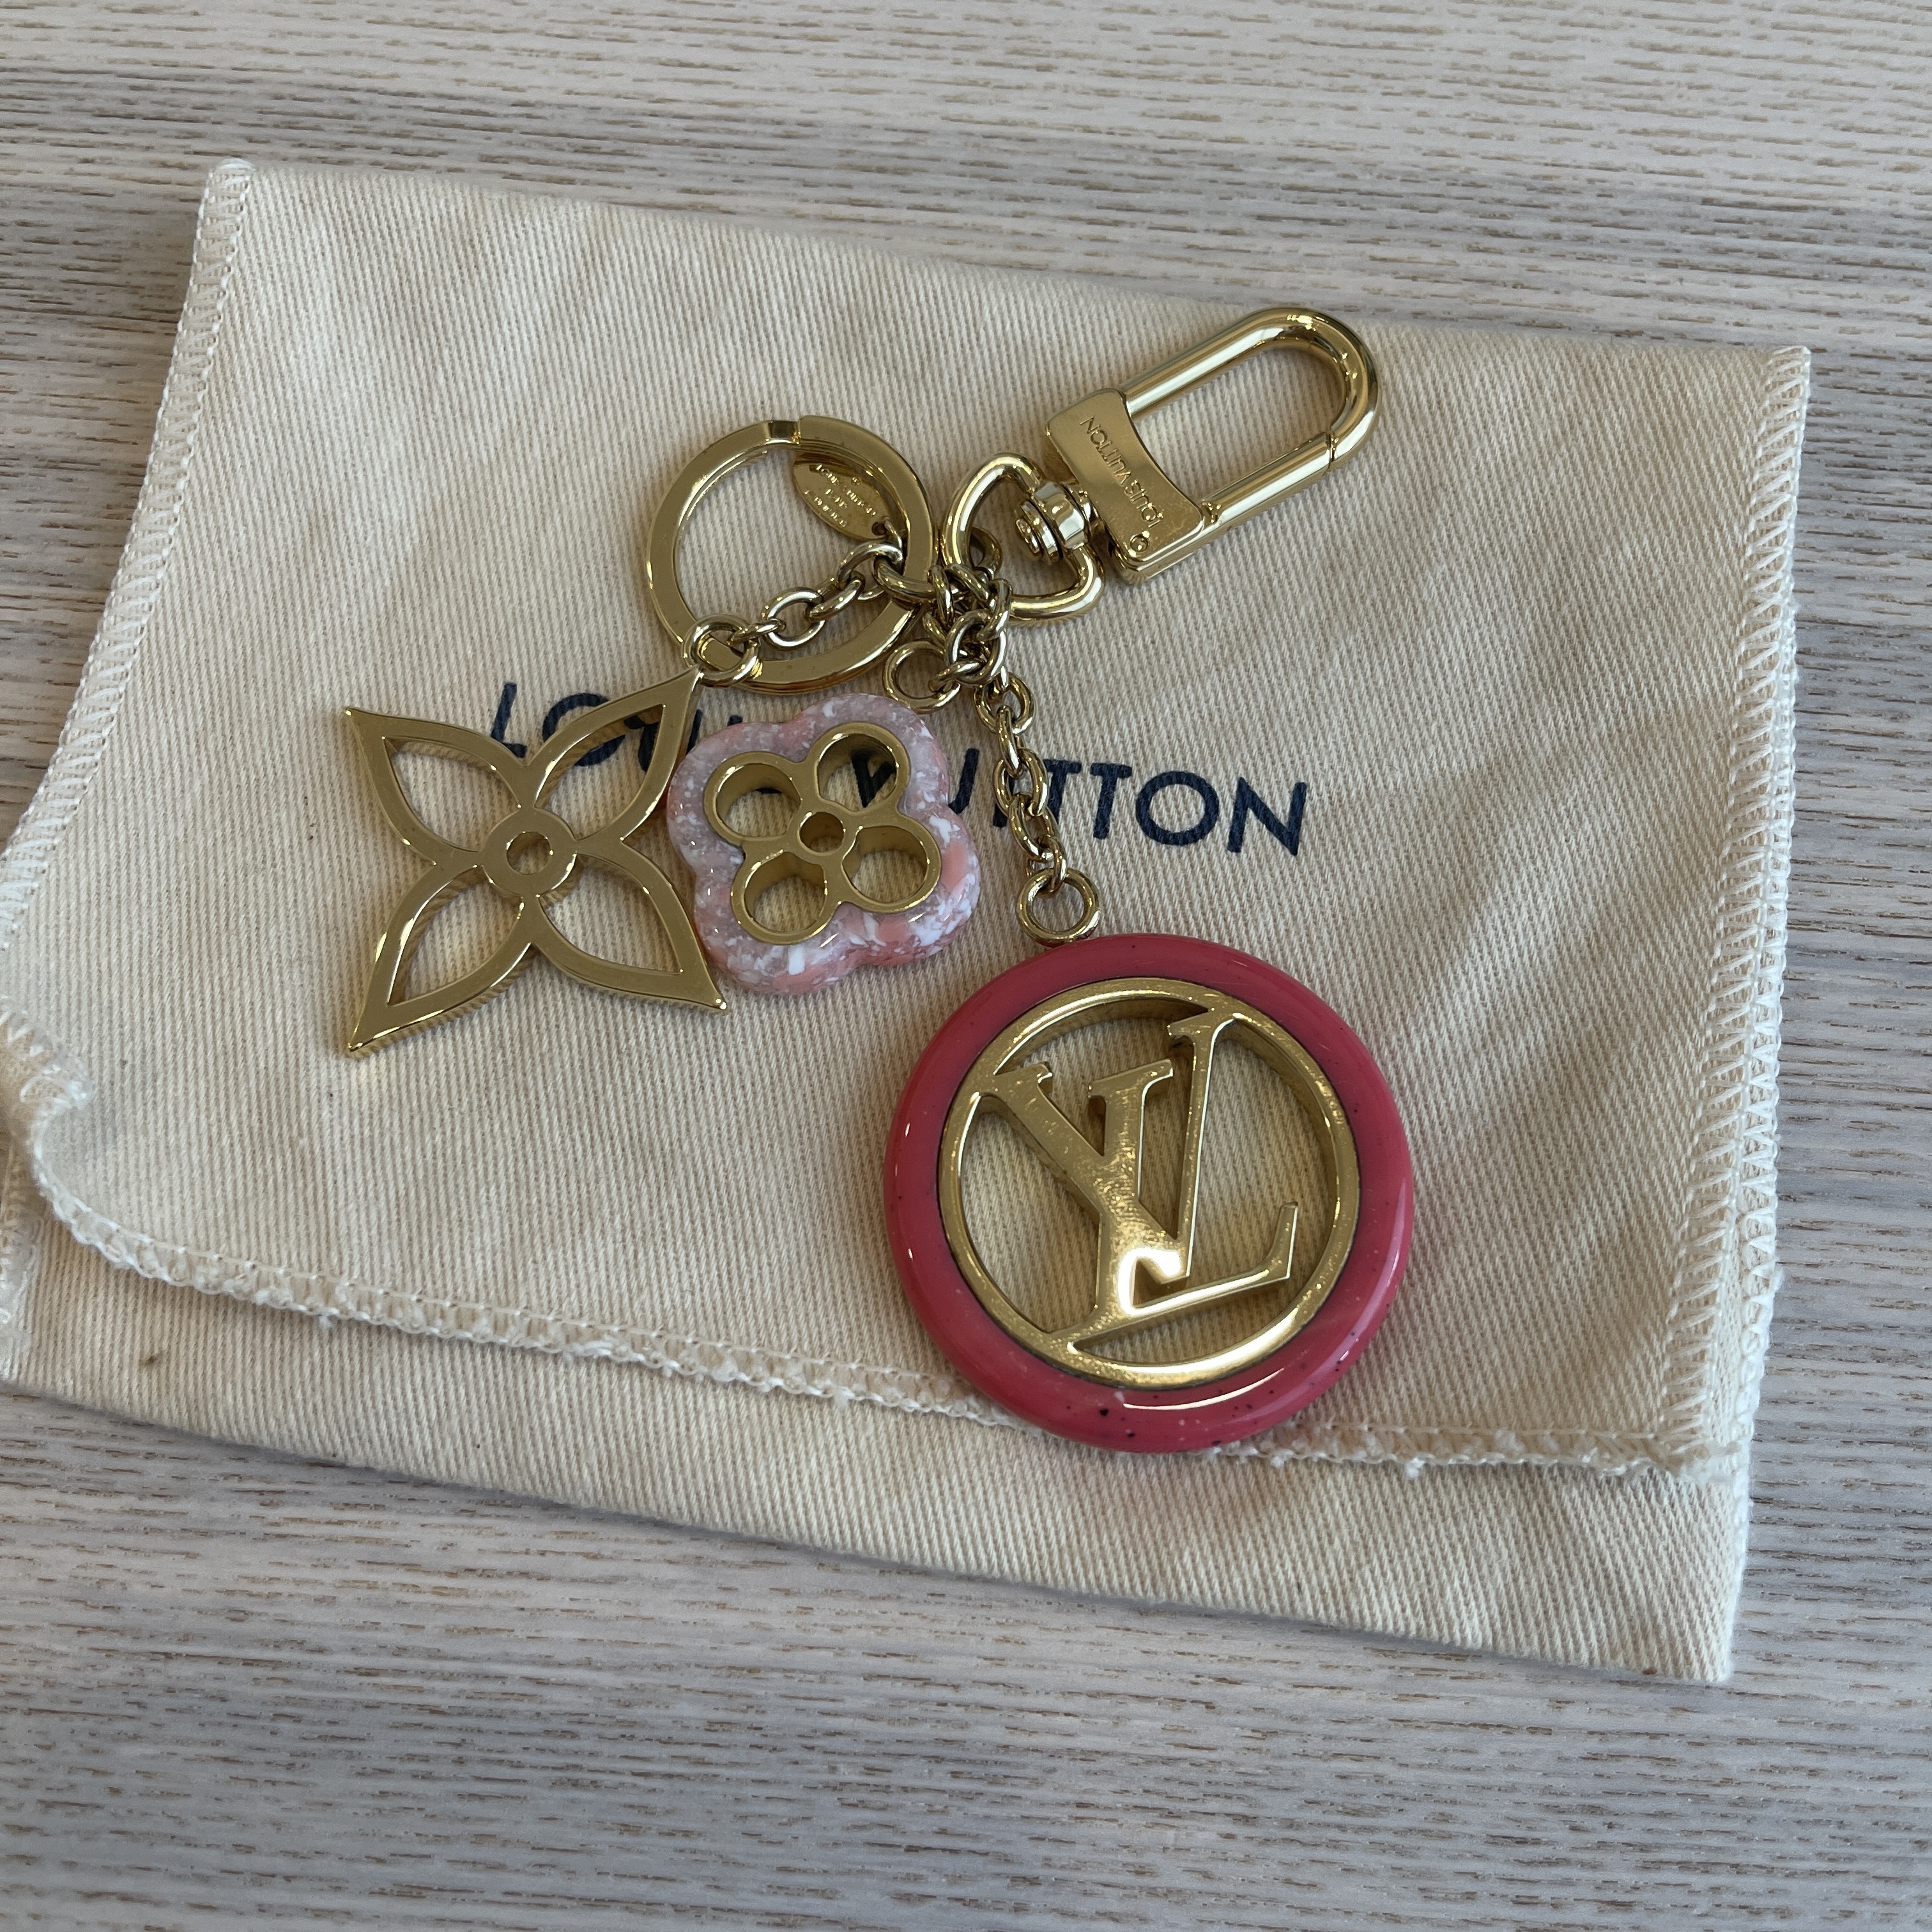 LOUIS VUITTON Colorline Bag Charm Key Holder 1297954